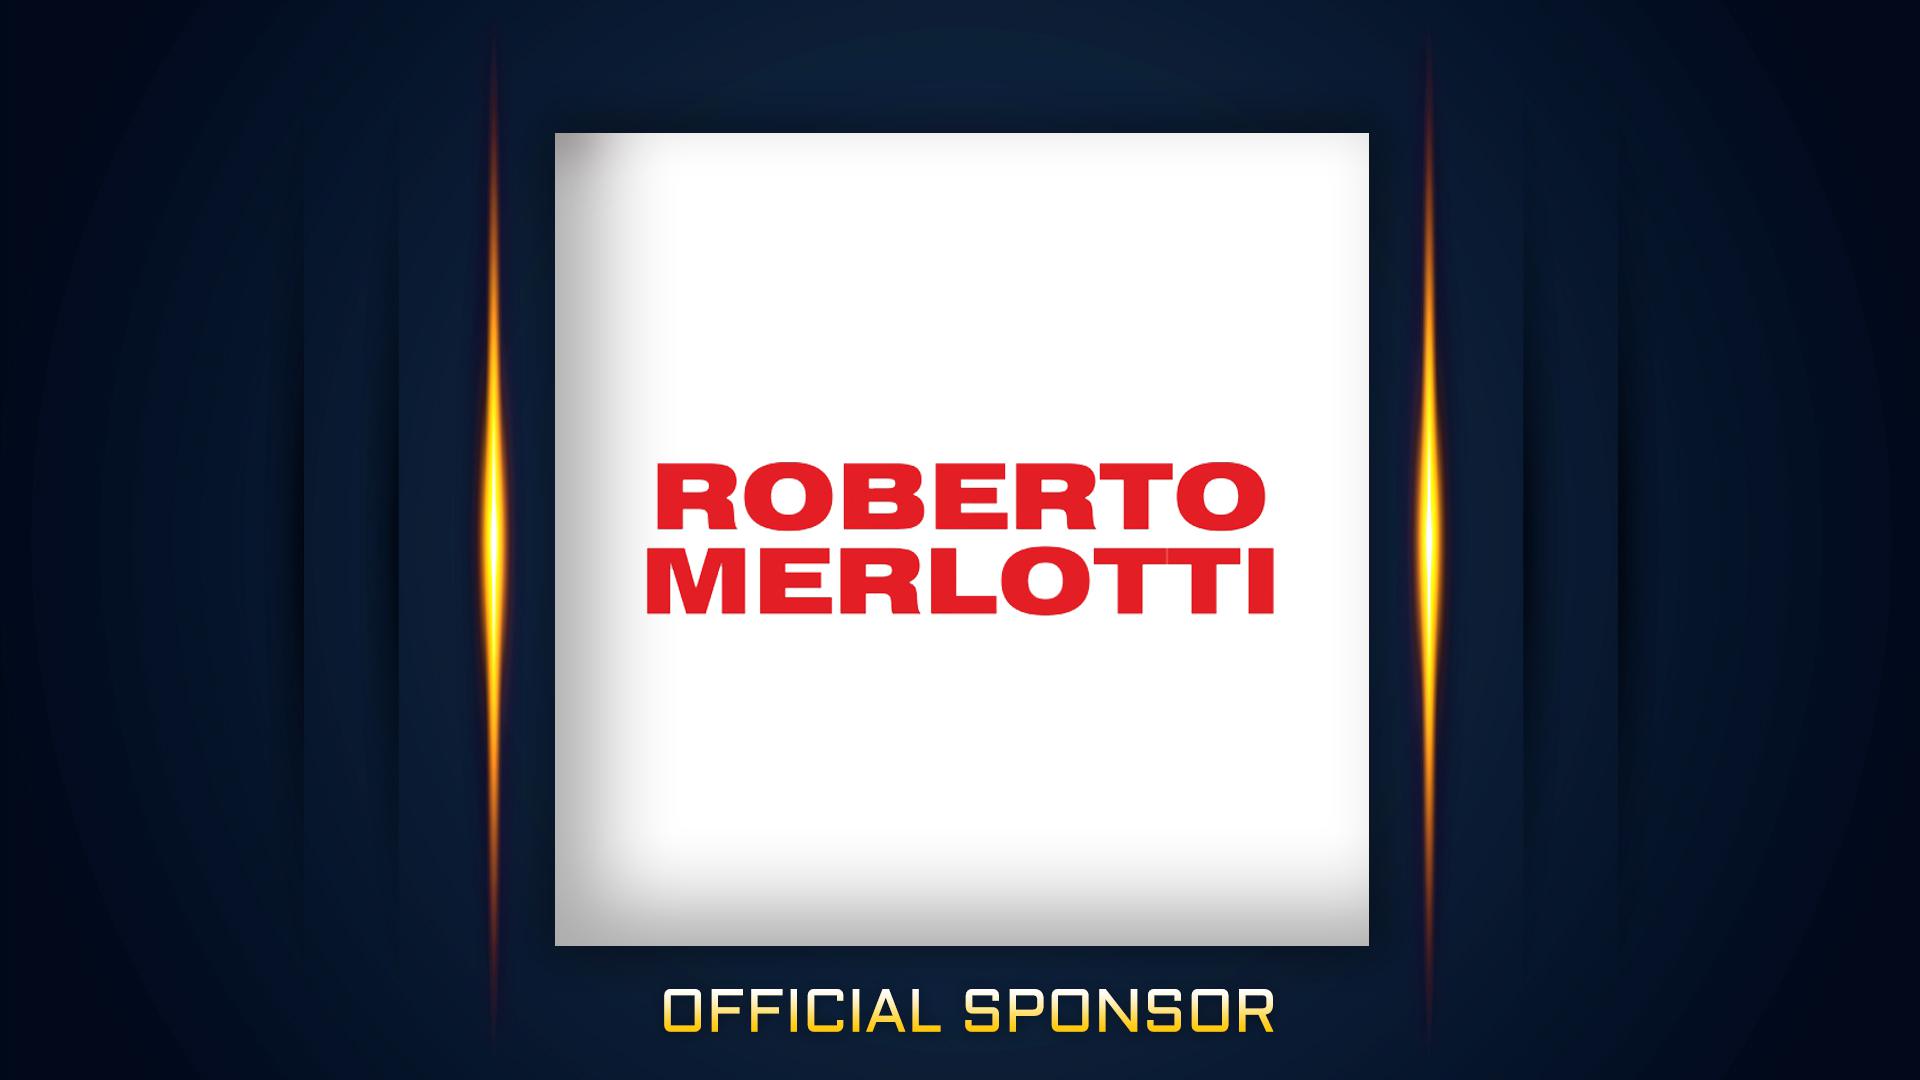 Roberto Merlotti